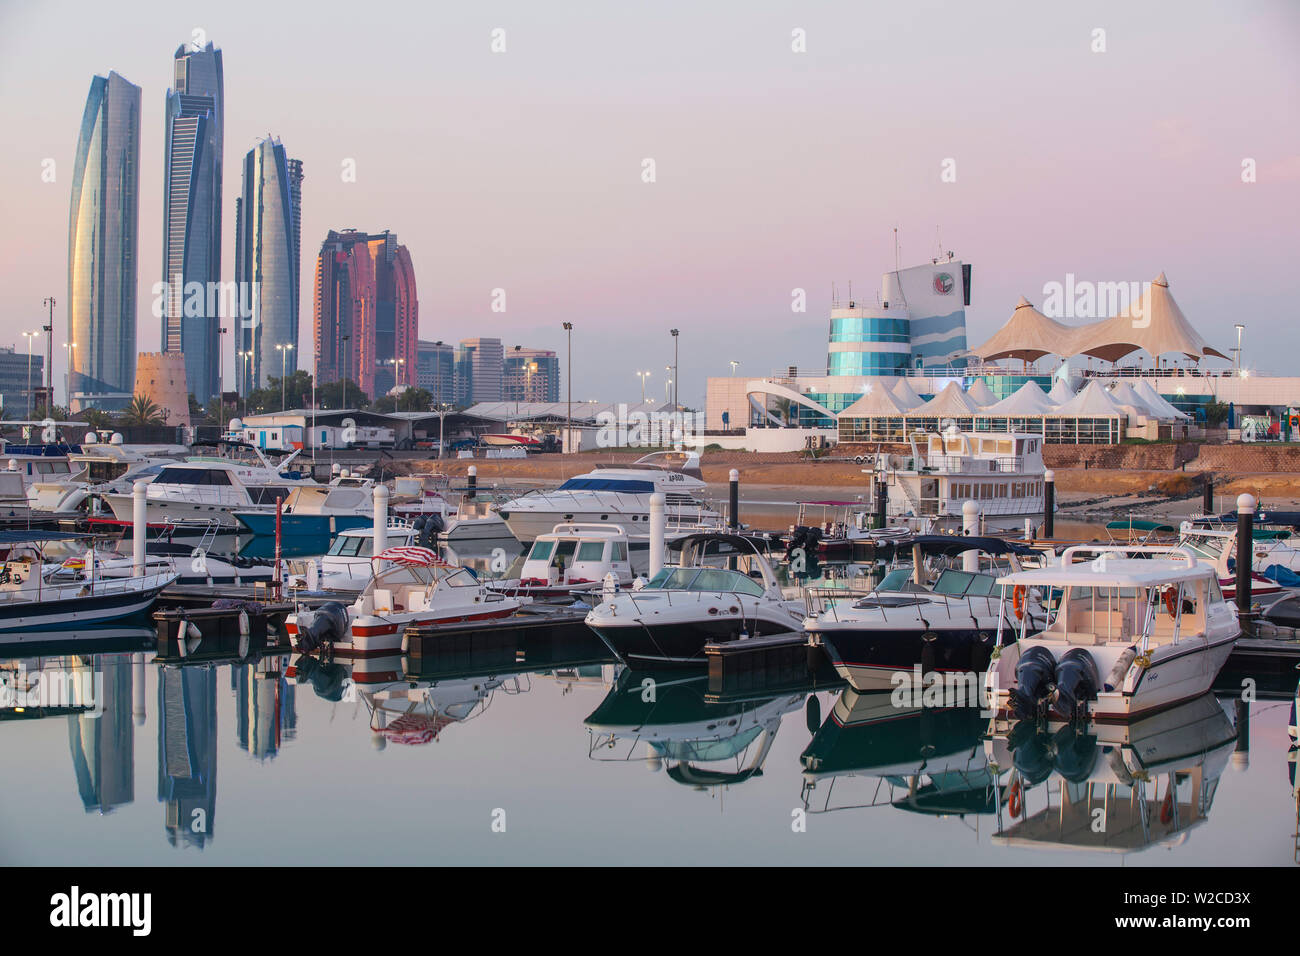 Emirats arabes unis, Abu Dhabi, vue sur la marina et sur les toits de la ville à l'égard Etihad Towers et à droite l'Abu Dhabi International Marine Sports Club Banque D'Images